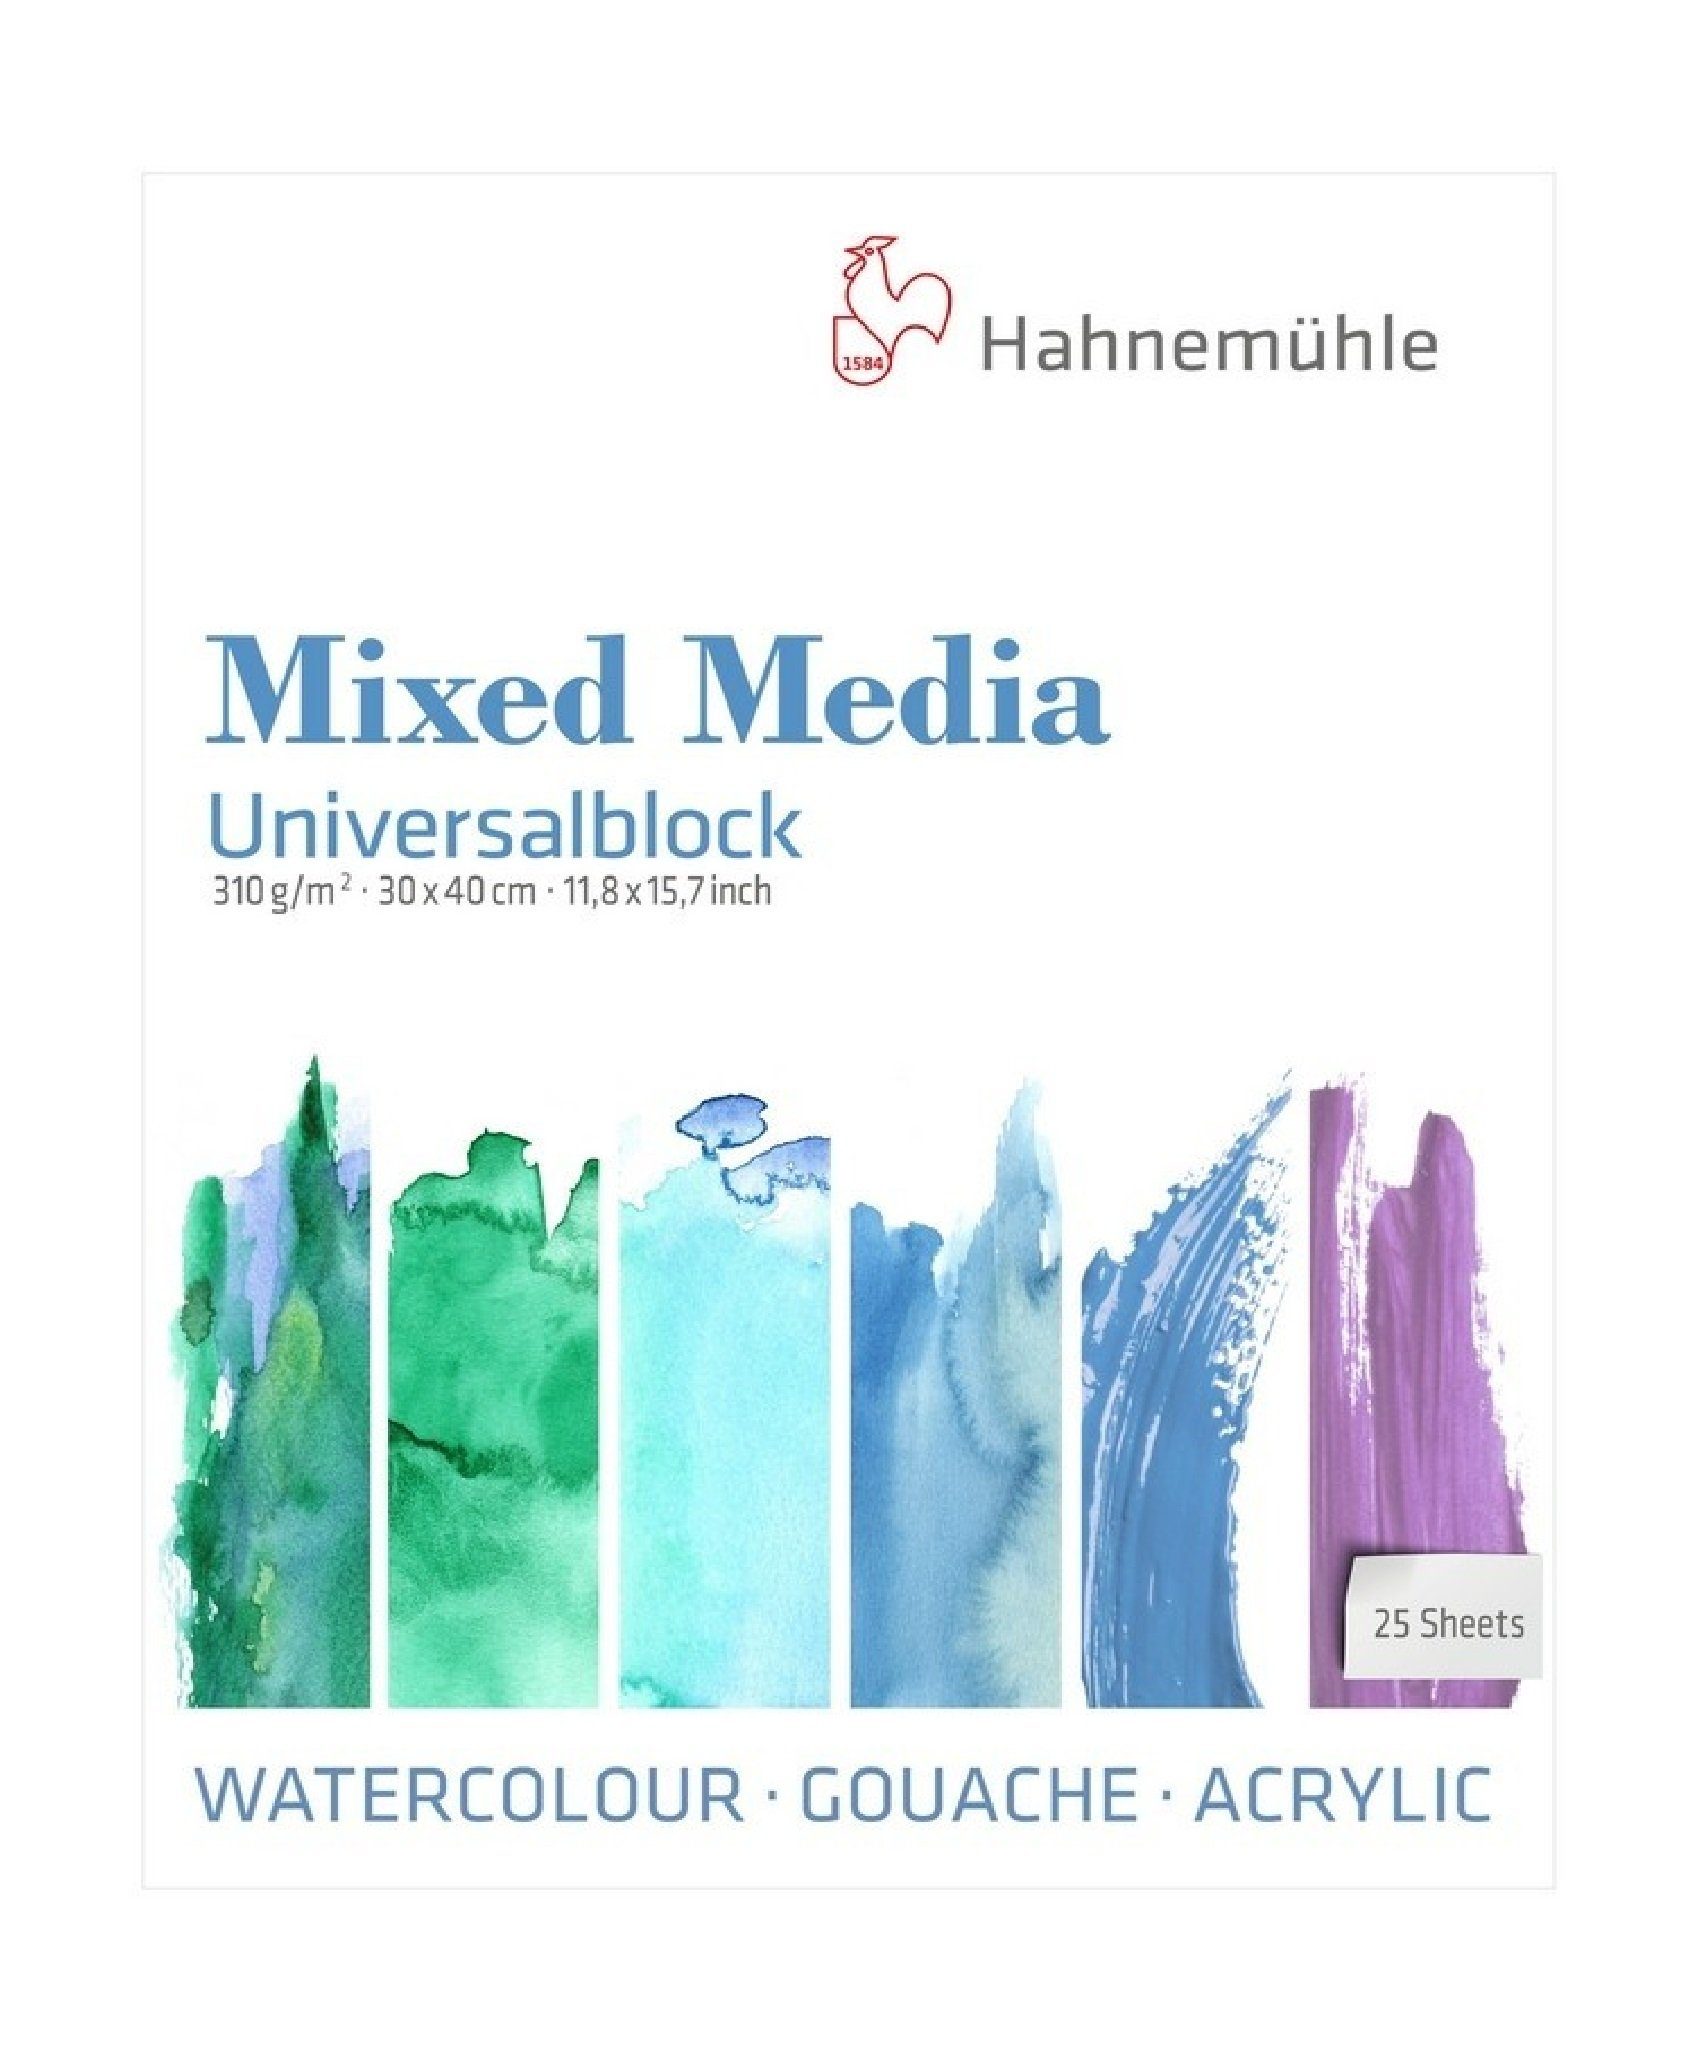 Hahnemühle Malblock Mixed Media 30x40cm 310g/m², säurefrei Universalblock